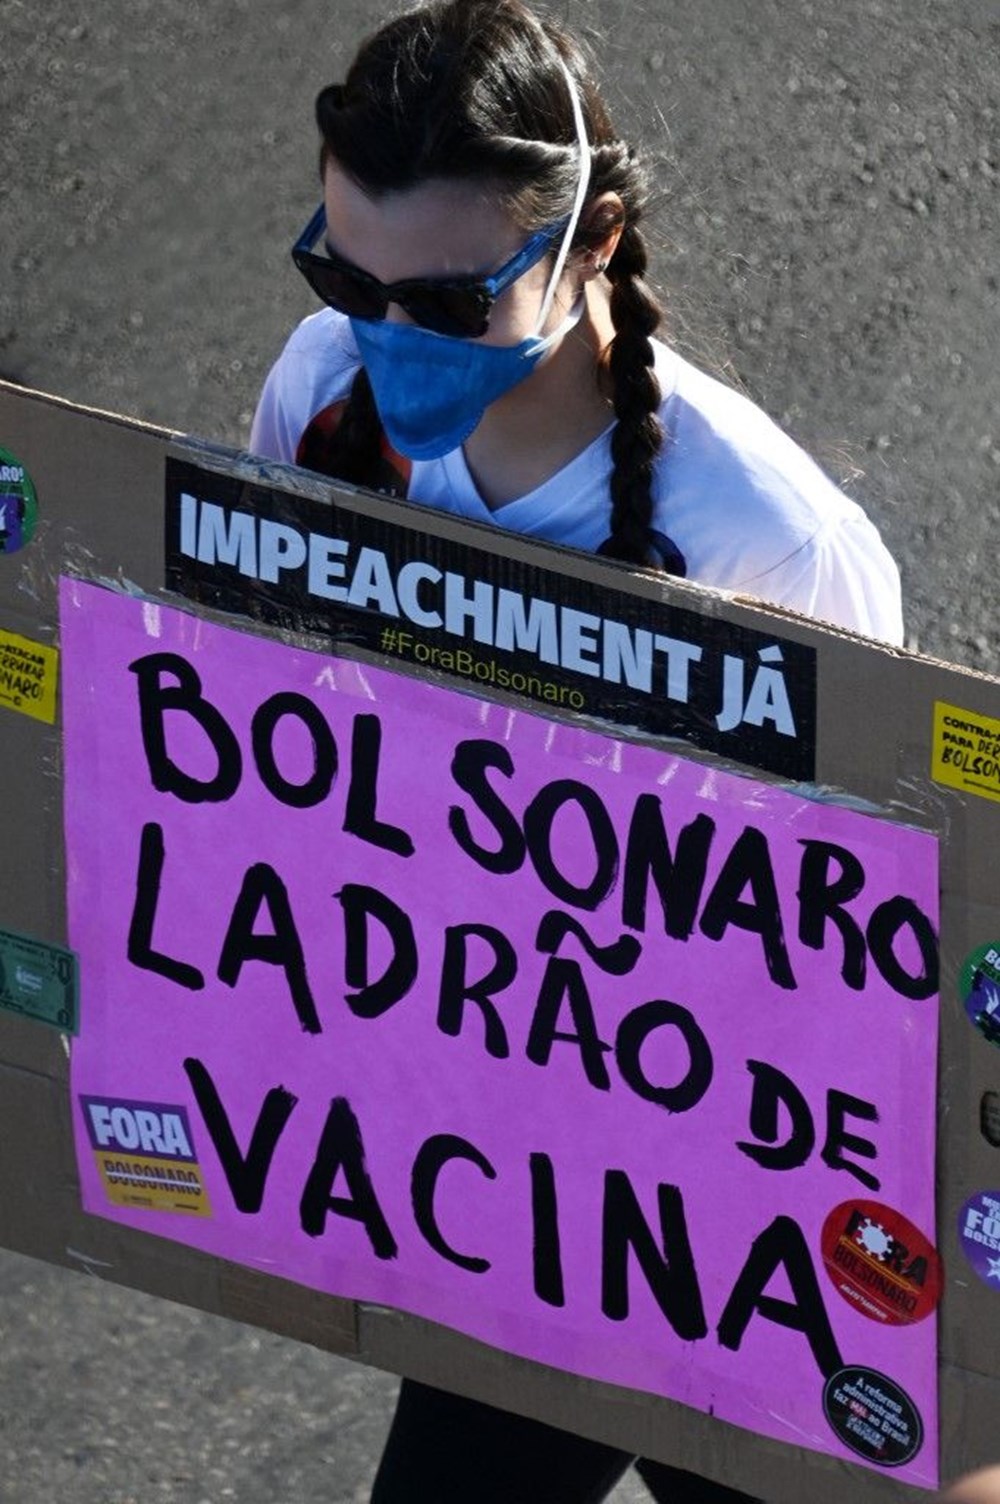 Senato raporu: Bolsonaro, ülkedeki Covid-19 ölümlerindeki rolü nedeniyle yargılanmalı - 5